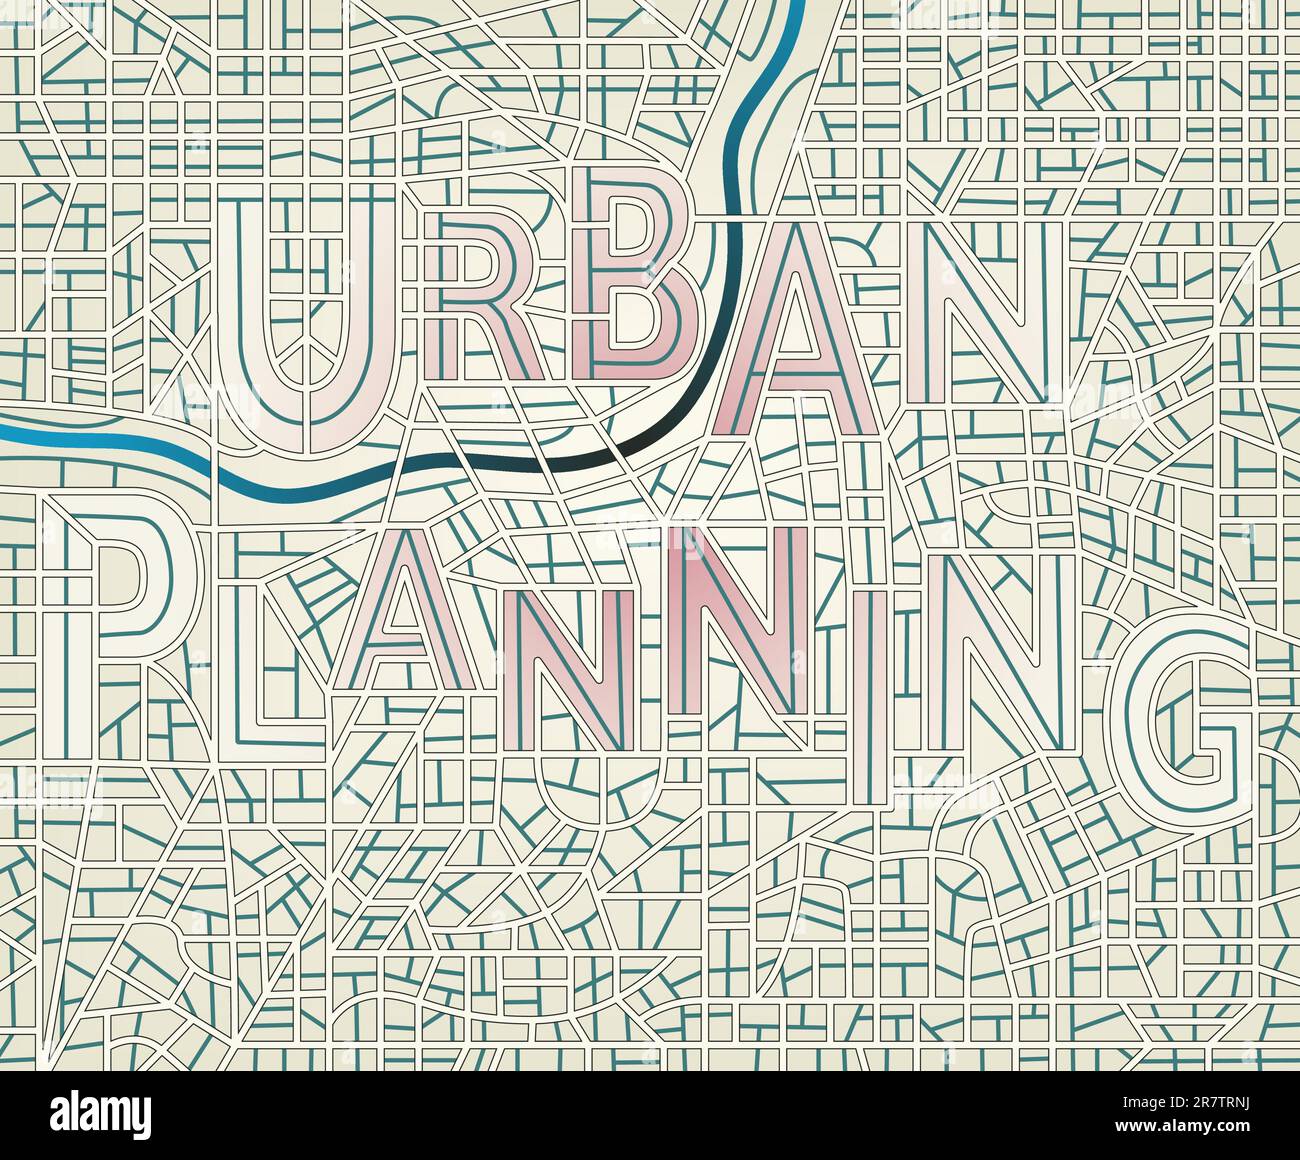 Editierbare Vektorkarte einer generischen Stadt, auf der die Straßen die Wörter „Urban Planning“ (Stadtplanung) schreiben, enthält Umrisse für einen einfachen Farbwechsel Stock Vektor